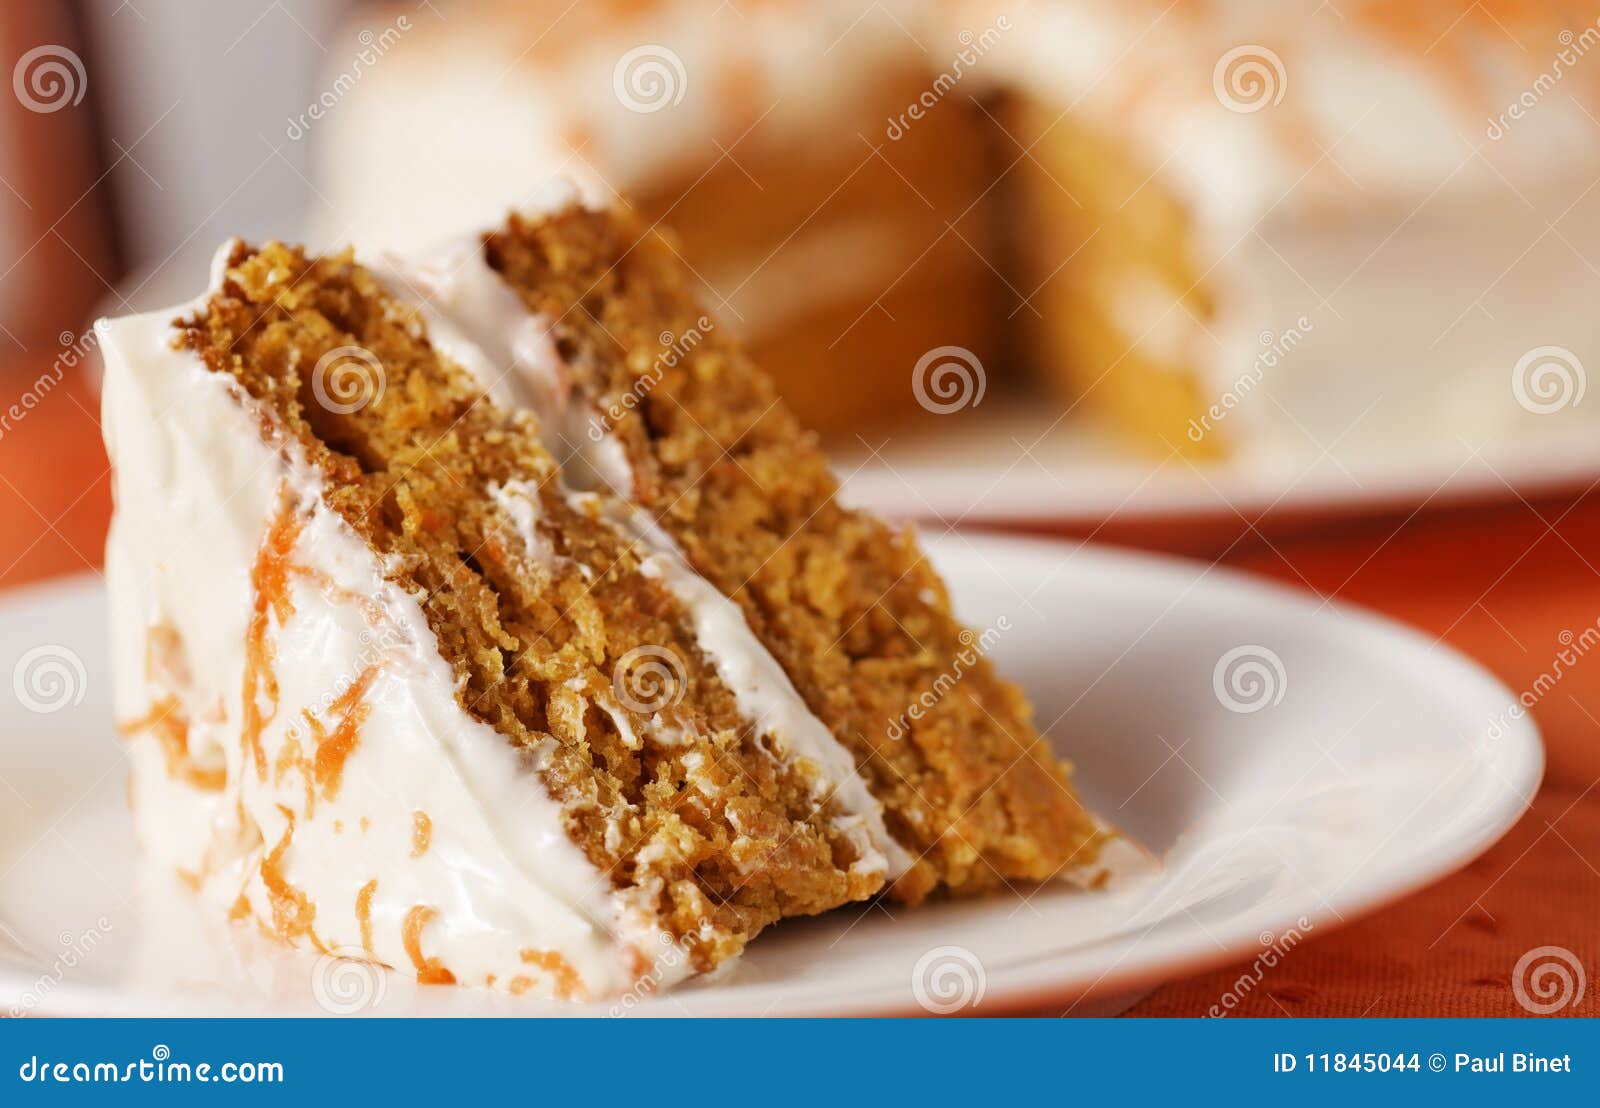 carrot cake horizontal